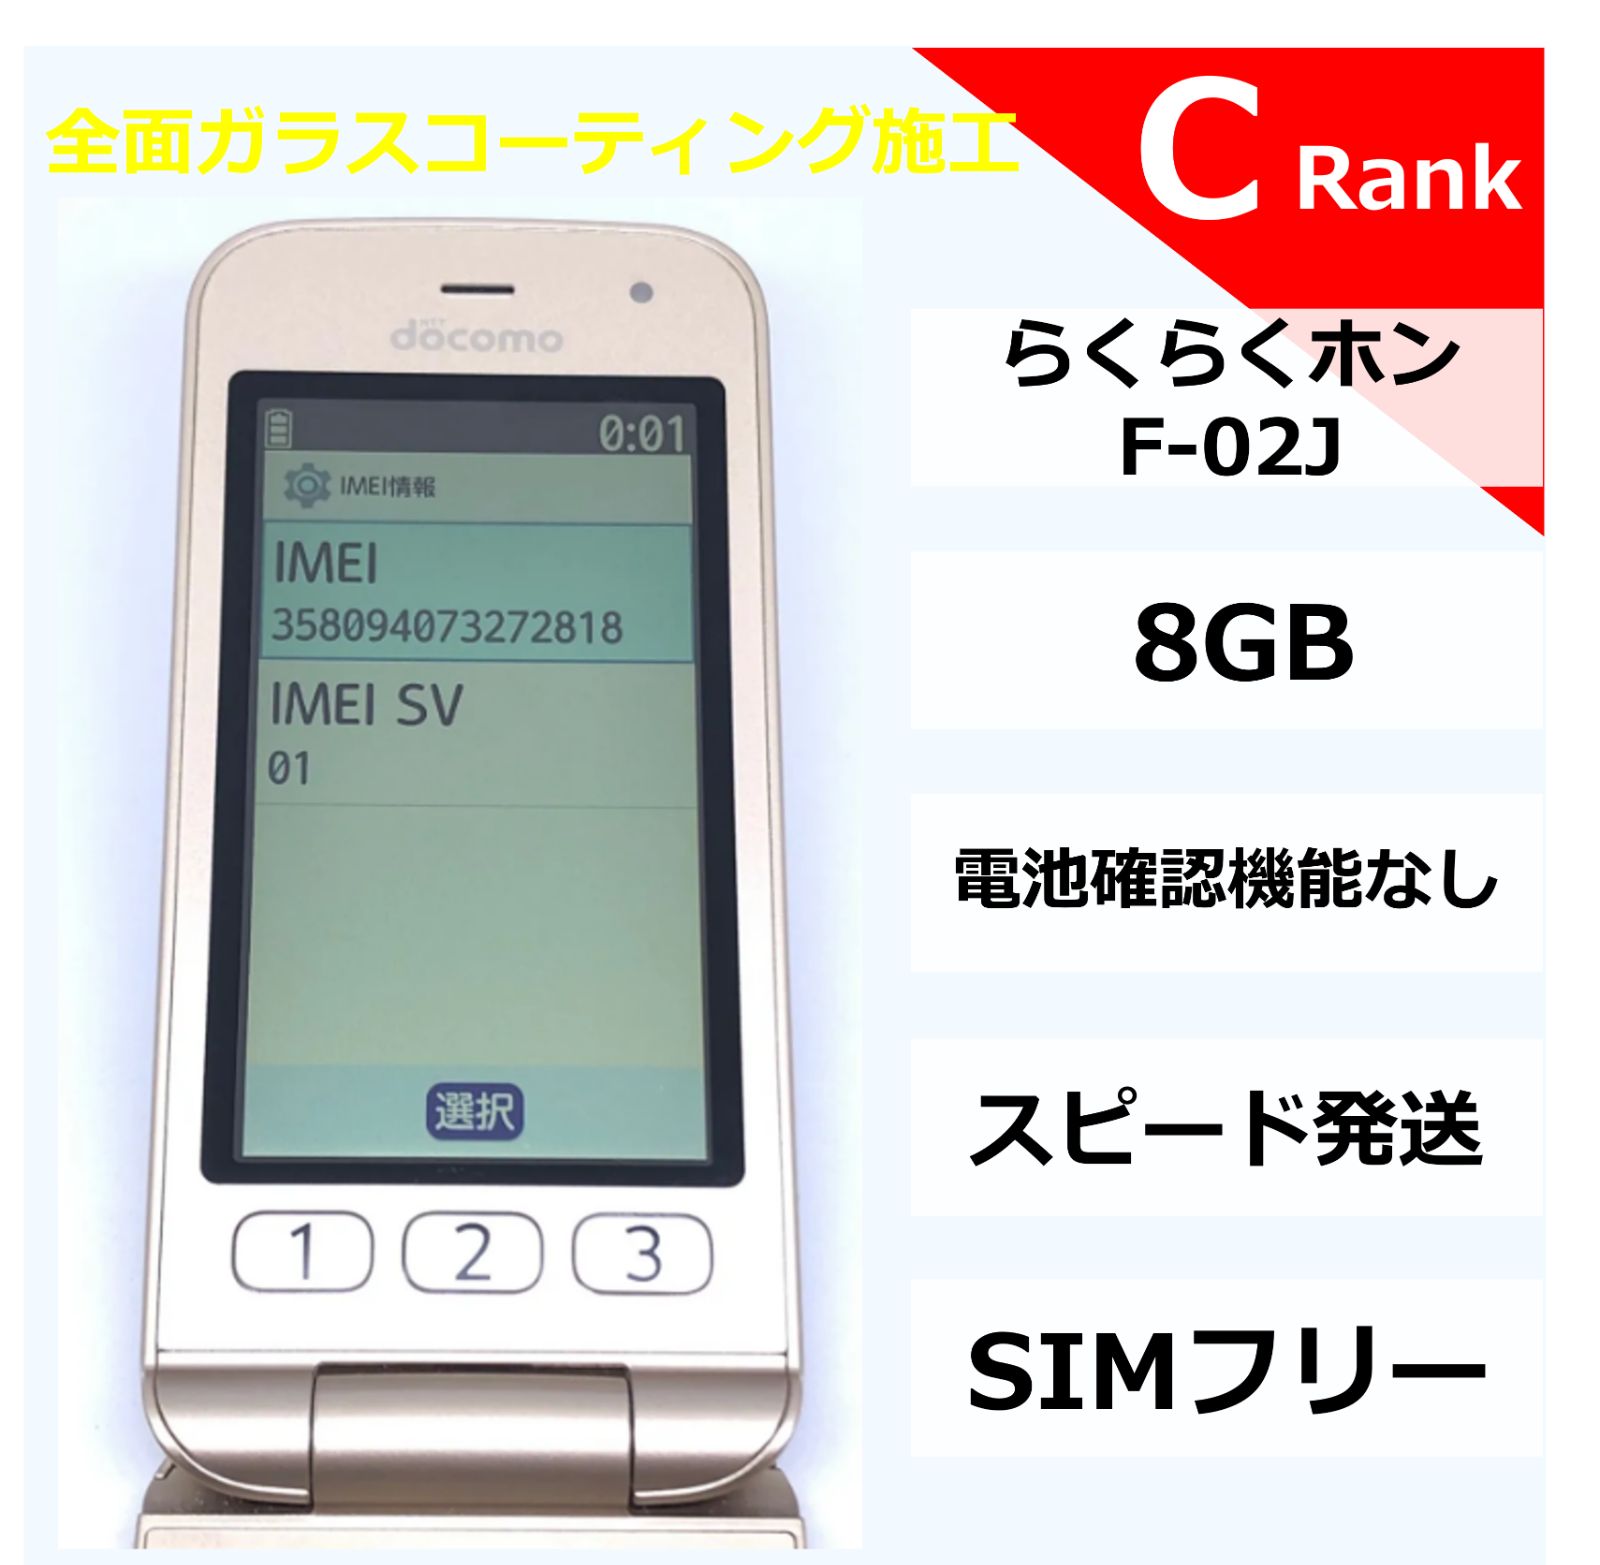 らくらくホン F-02J[8GB] docomo ピンク【安心保証】 - 携帯電話 